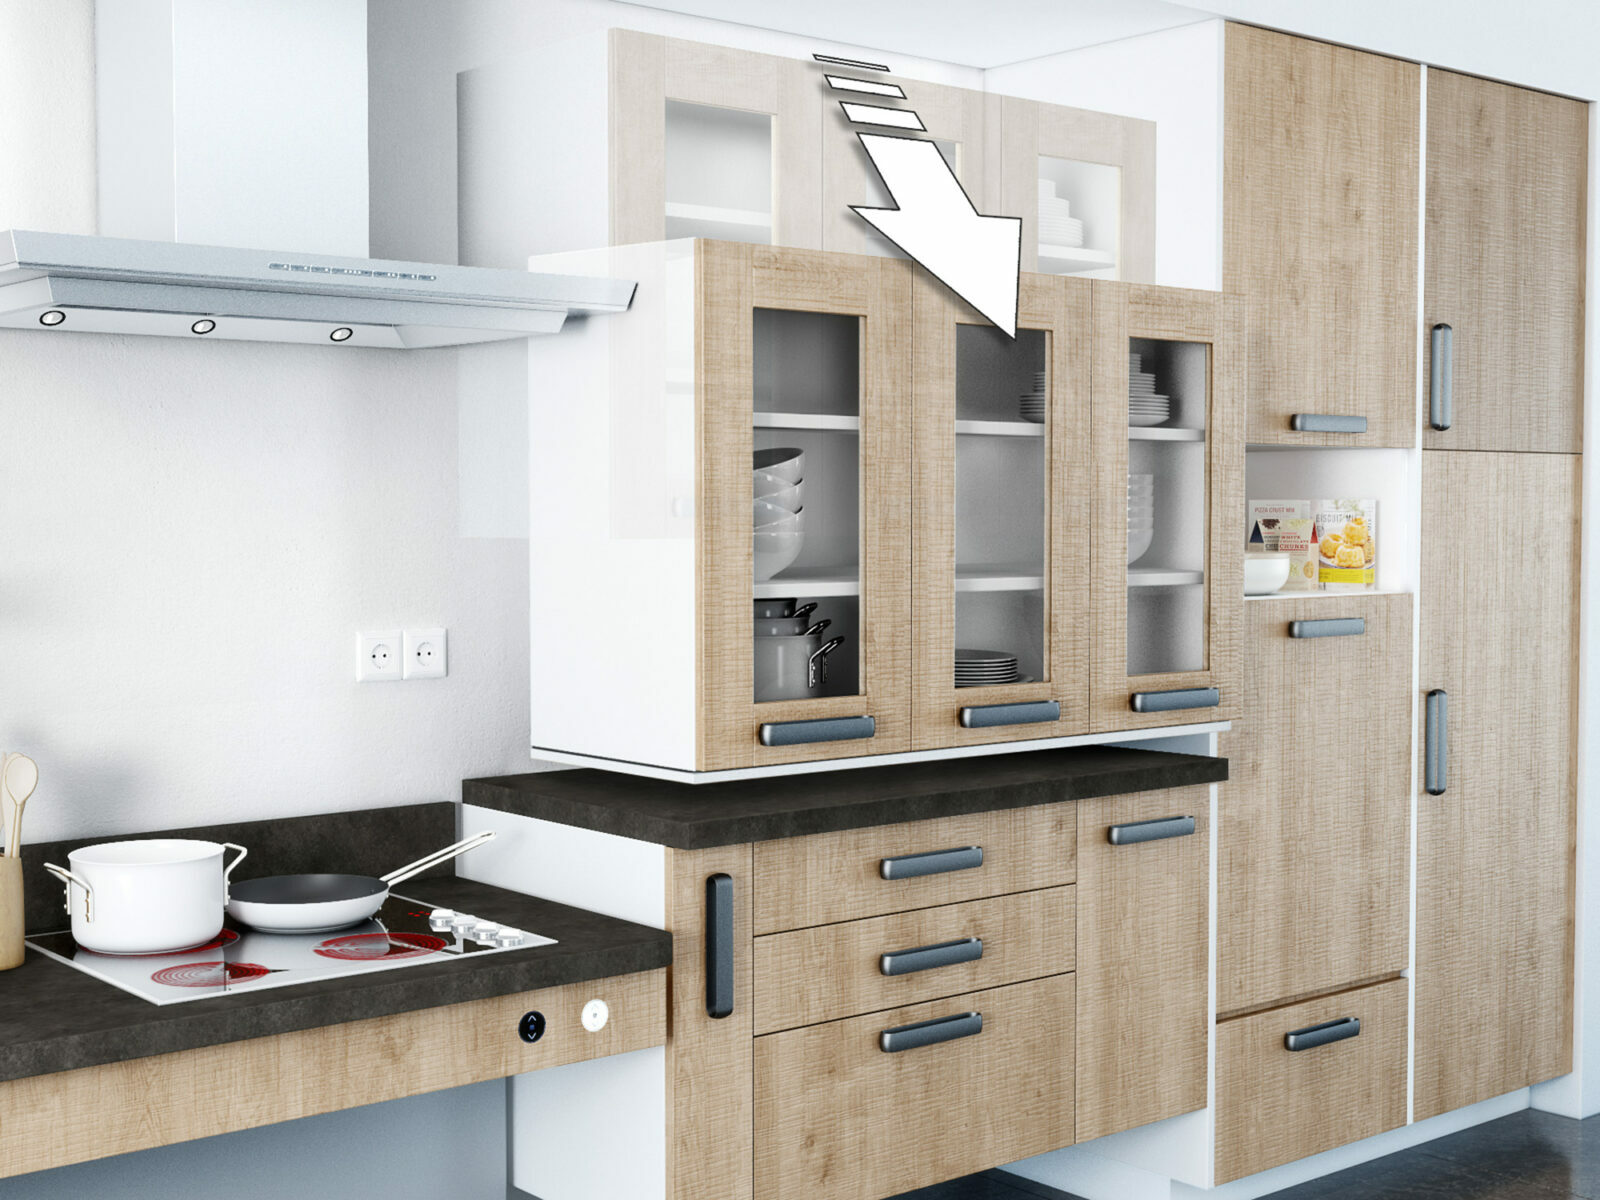 Intérieur de cuisine moderne avec armoires en bois ouvertes révélant de la vaisselle et de la verrerie soigneusement disposées, mettant en valeur une combinaison de fonctionnalité, de design et d'accessibilité.